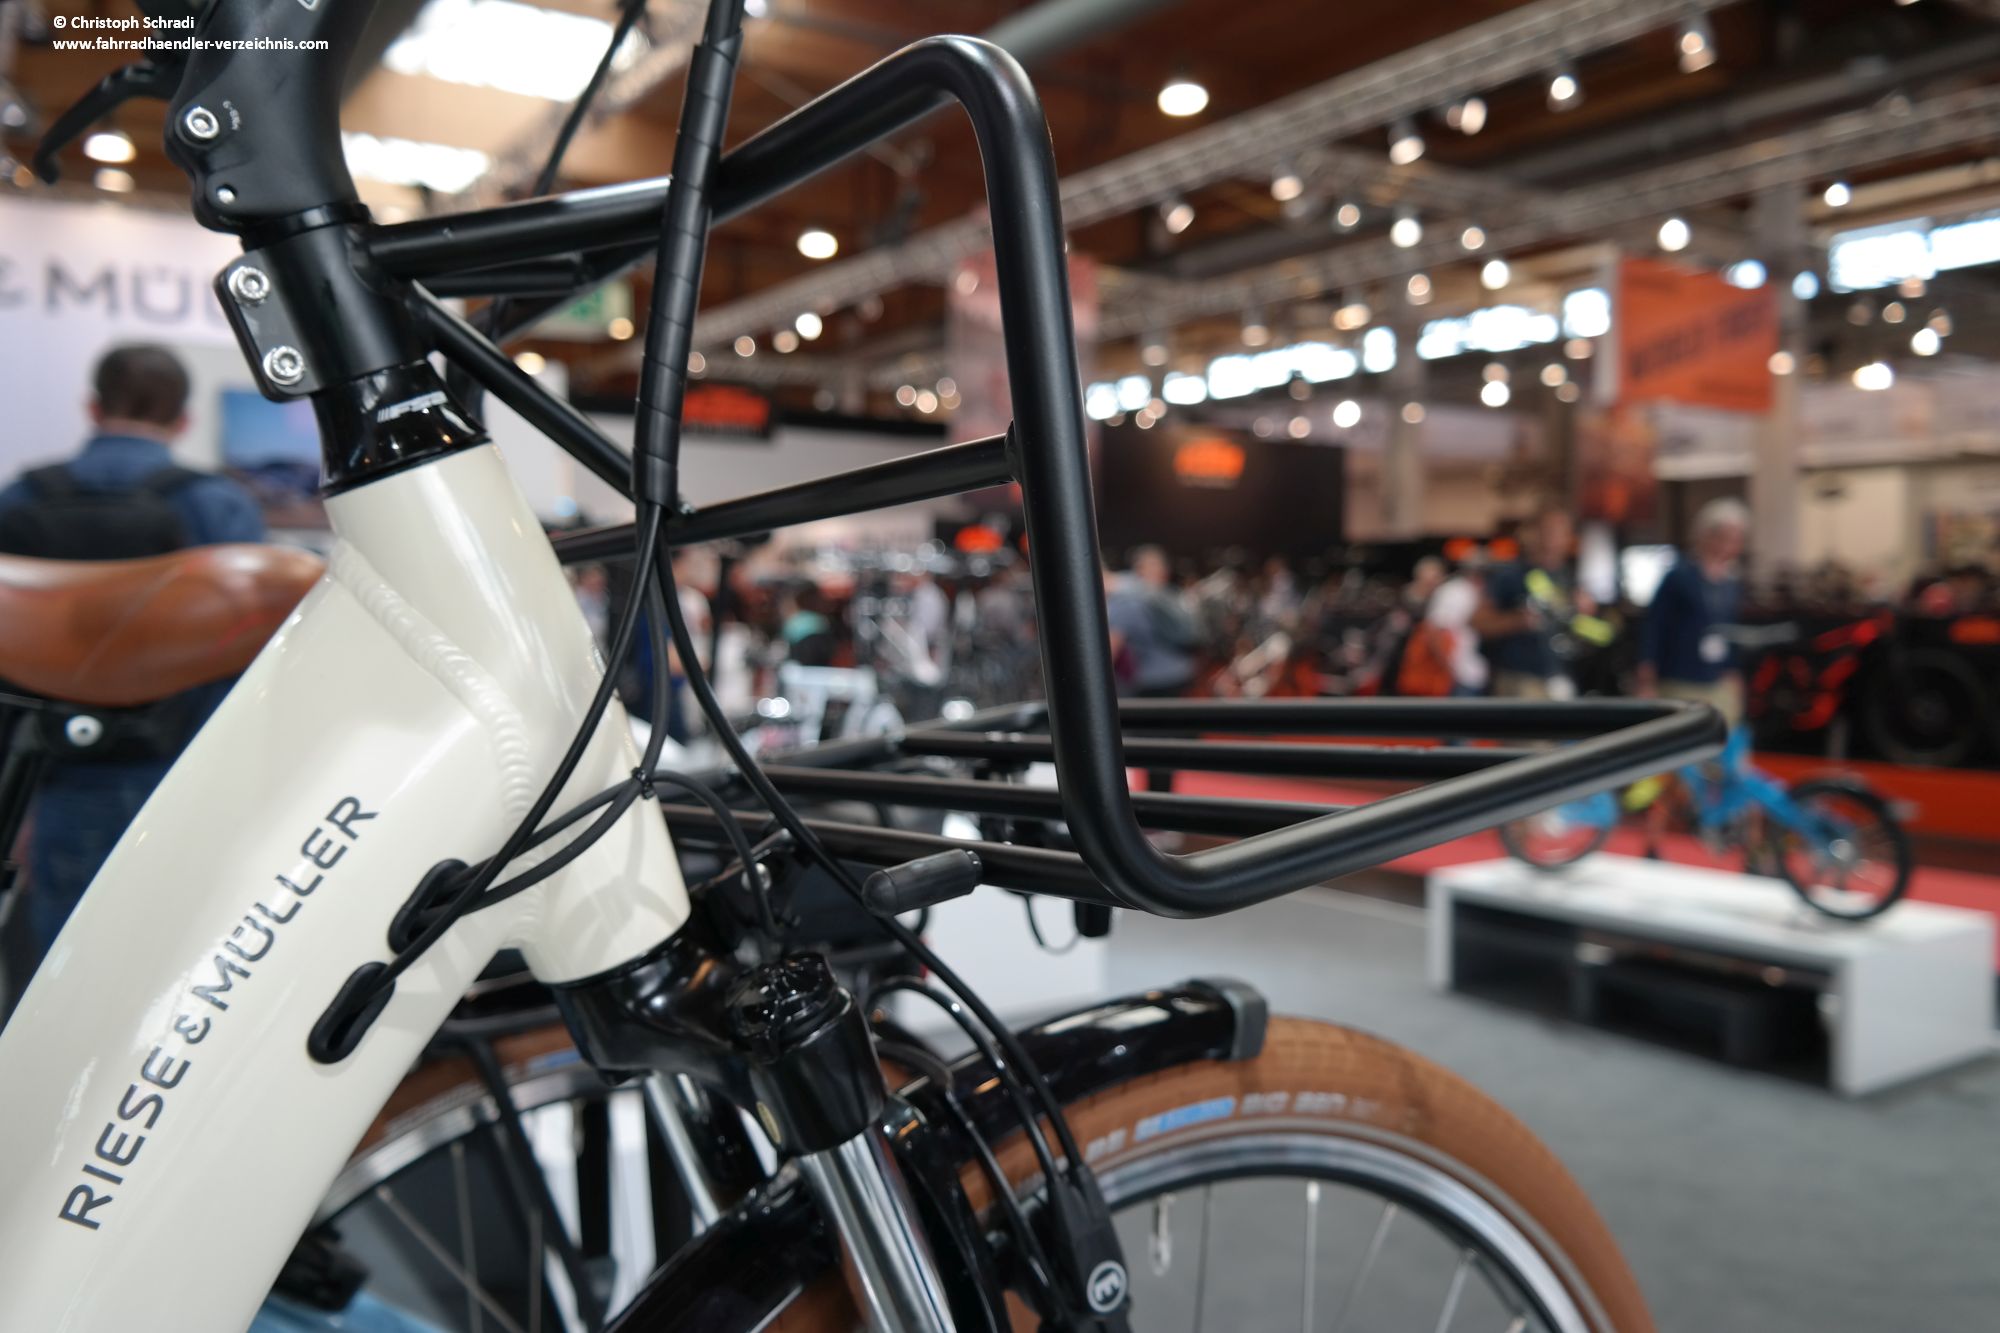 Früherer Nischenanbieter Riese und Müller profitiert massiv vom E-Bike Boom